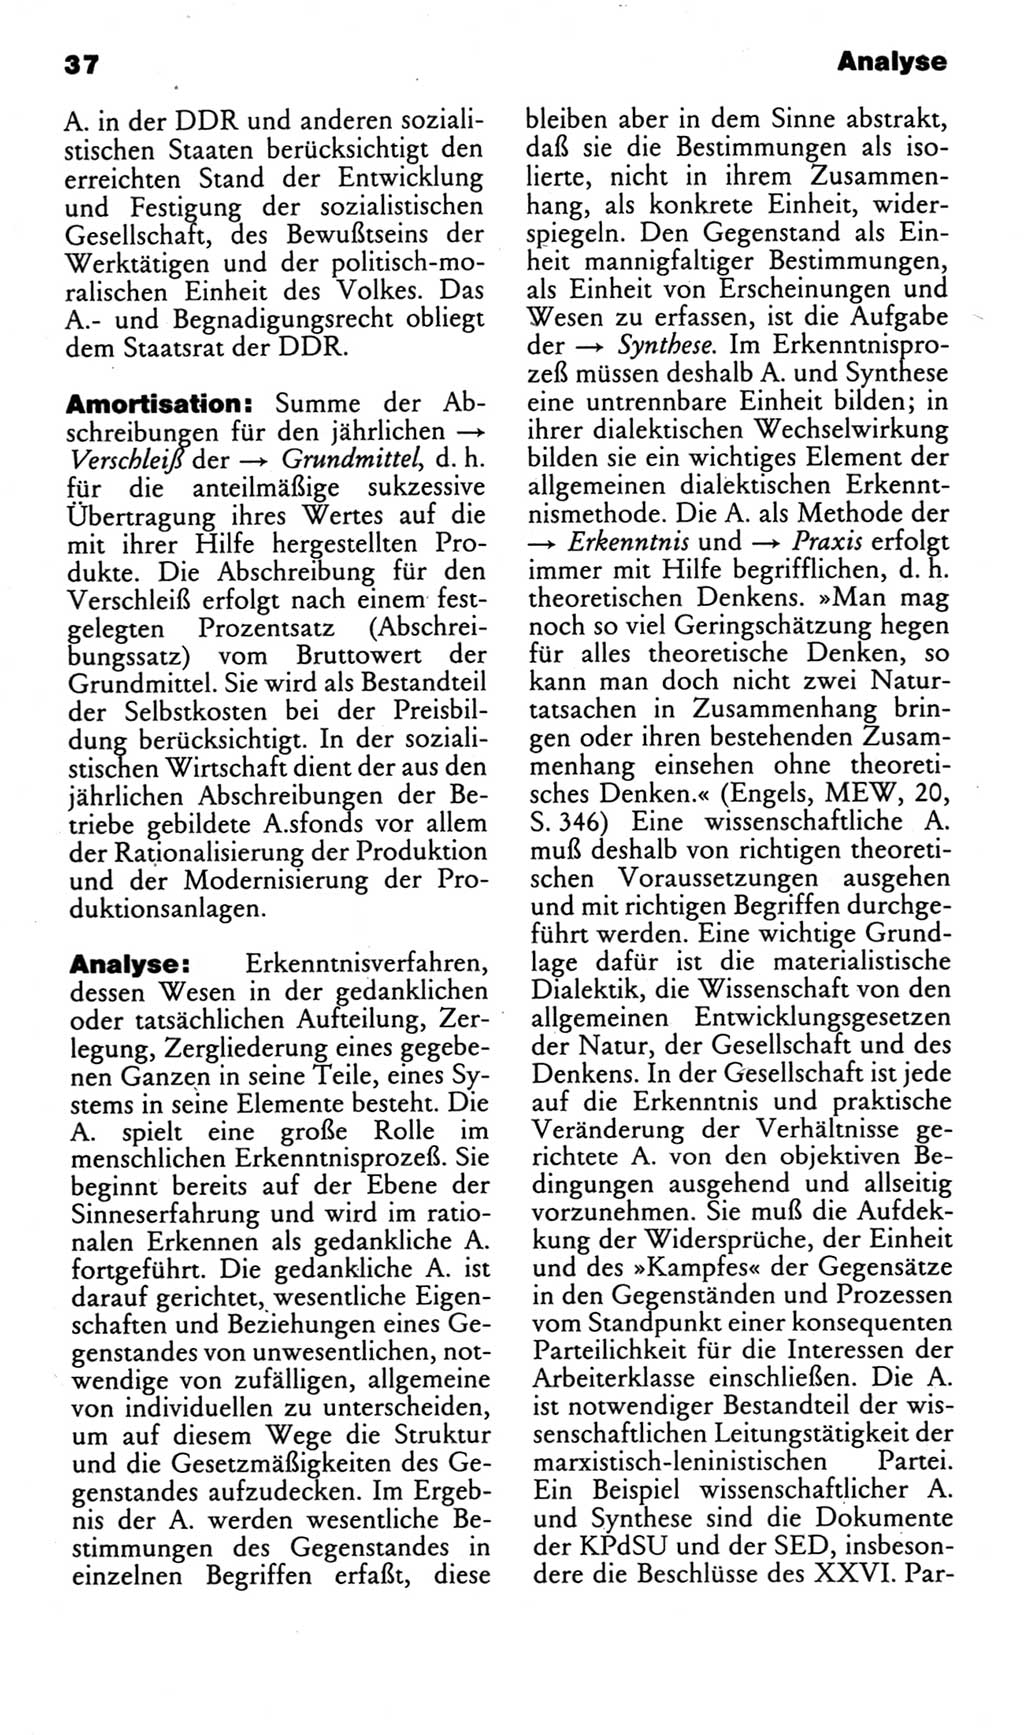 Kleines politisches Wörterbuch [Deutsche Demokratische Republik (DDR)] 1985, Seite 37 (Kl. pol. Wb. DDR 1985, S. 37)